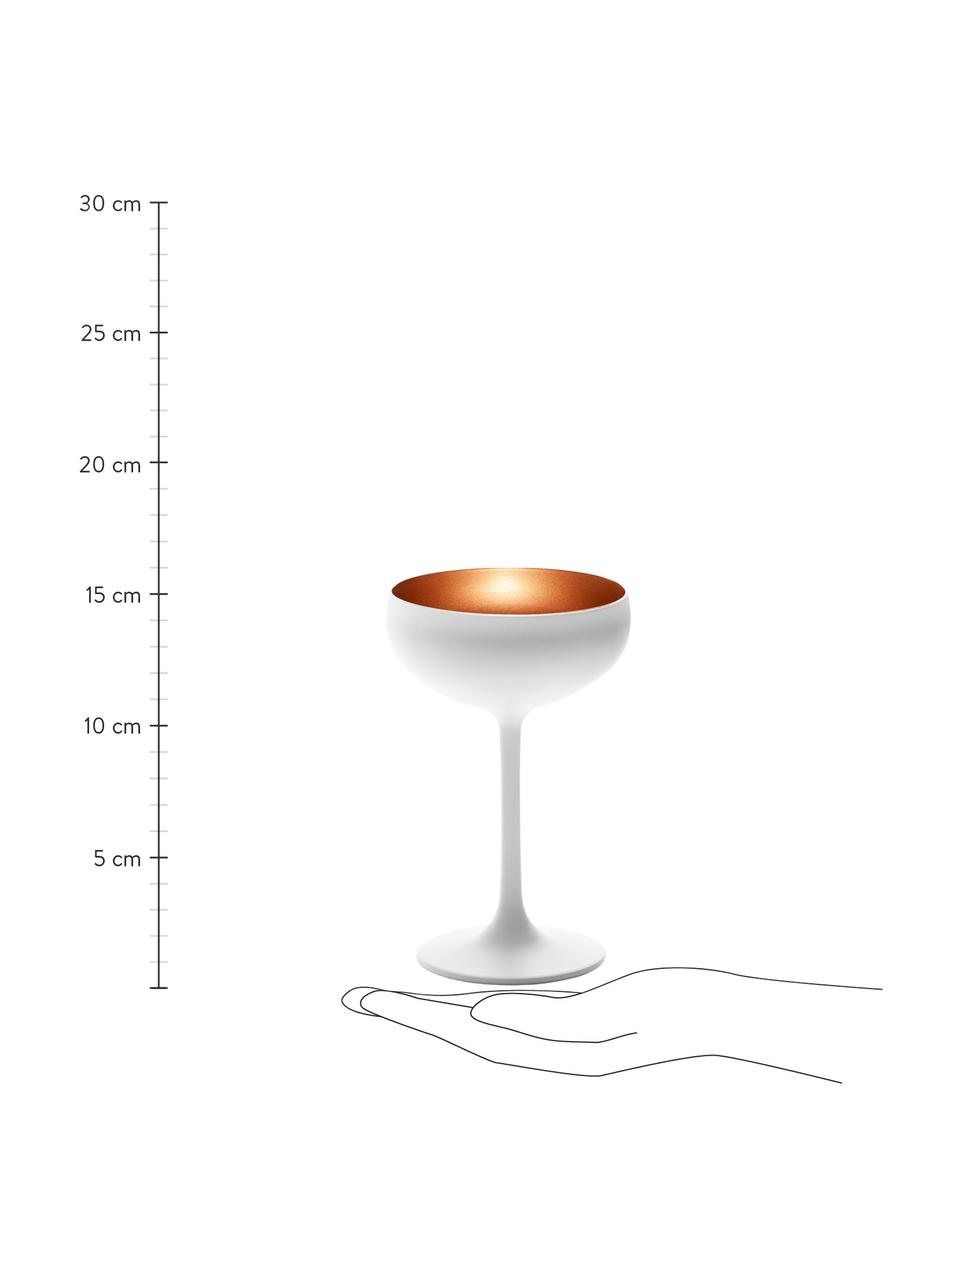 Křišťálová sklenice na šampaňské Elements, 6 ks, Potažený křišťál, Bílá, bronzová, Ø 10 cm, V 15 cm, 230 ml